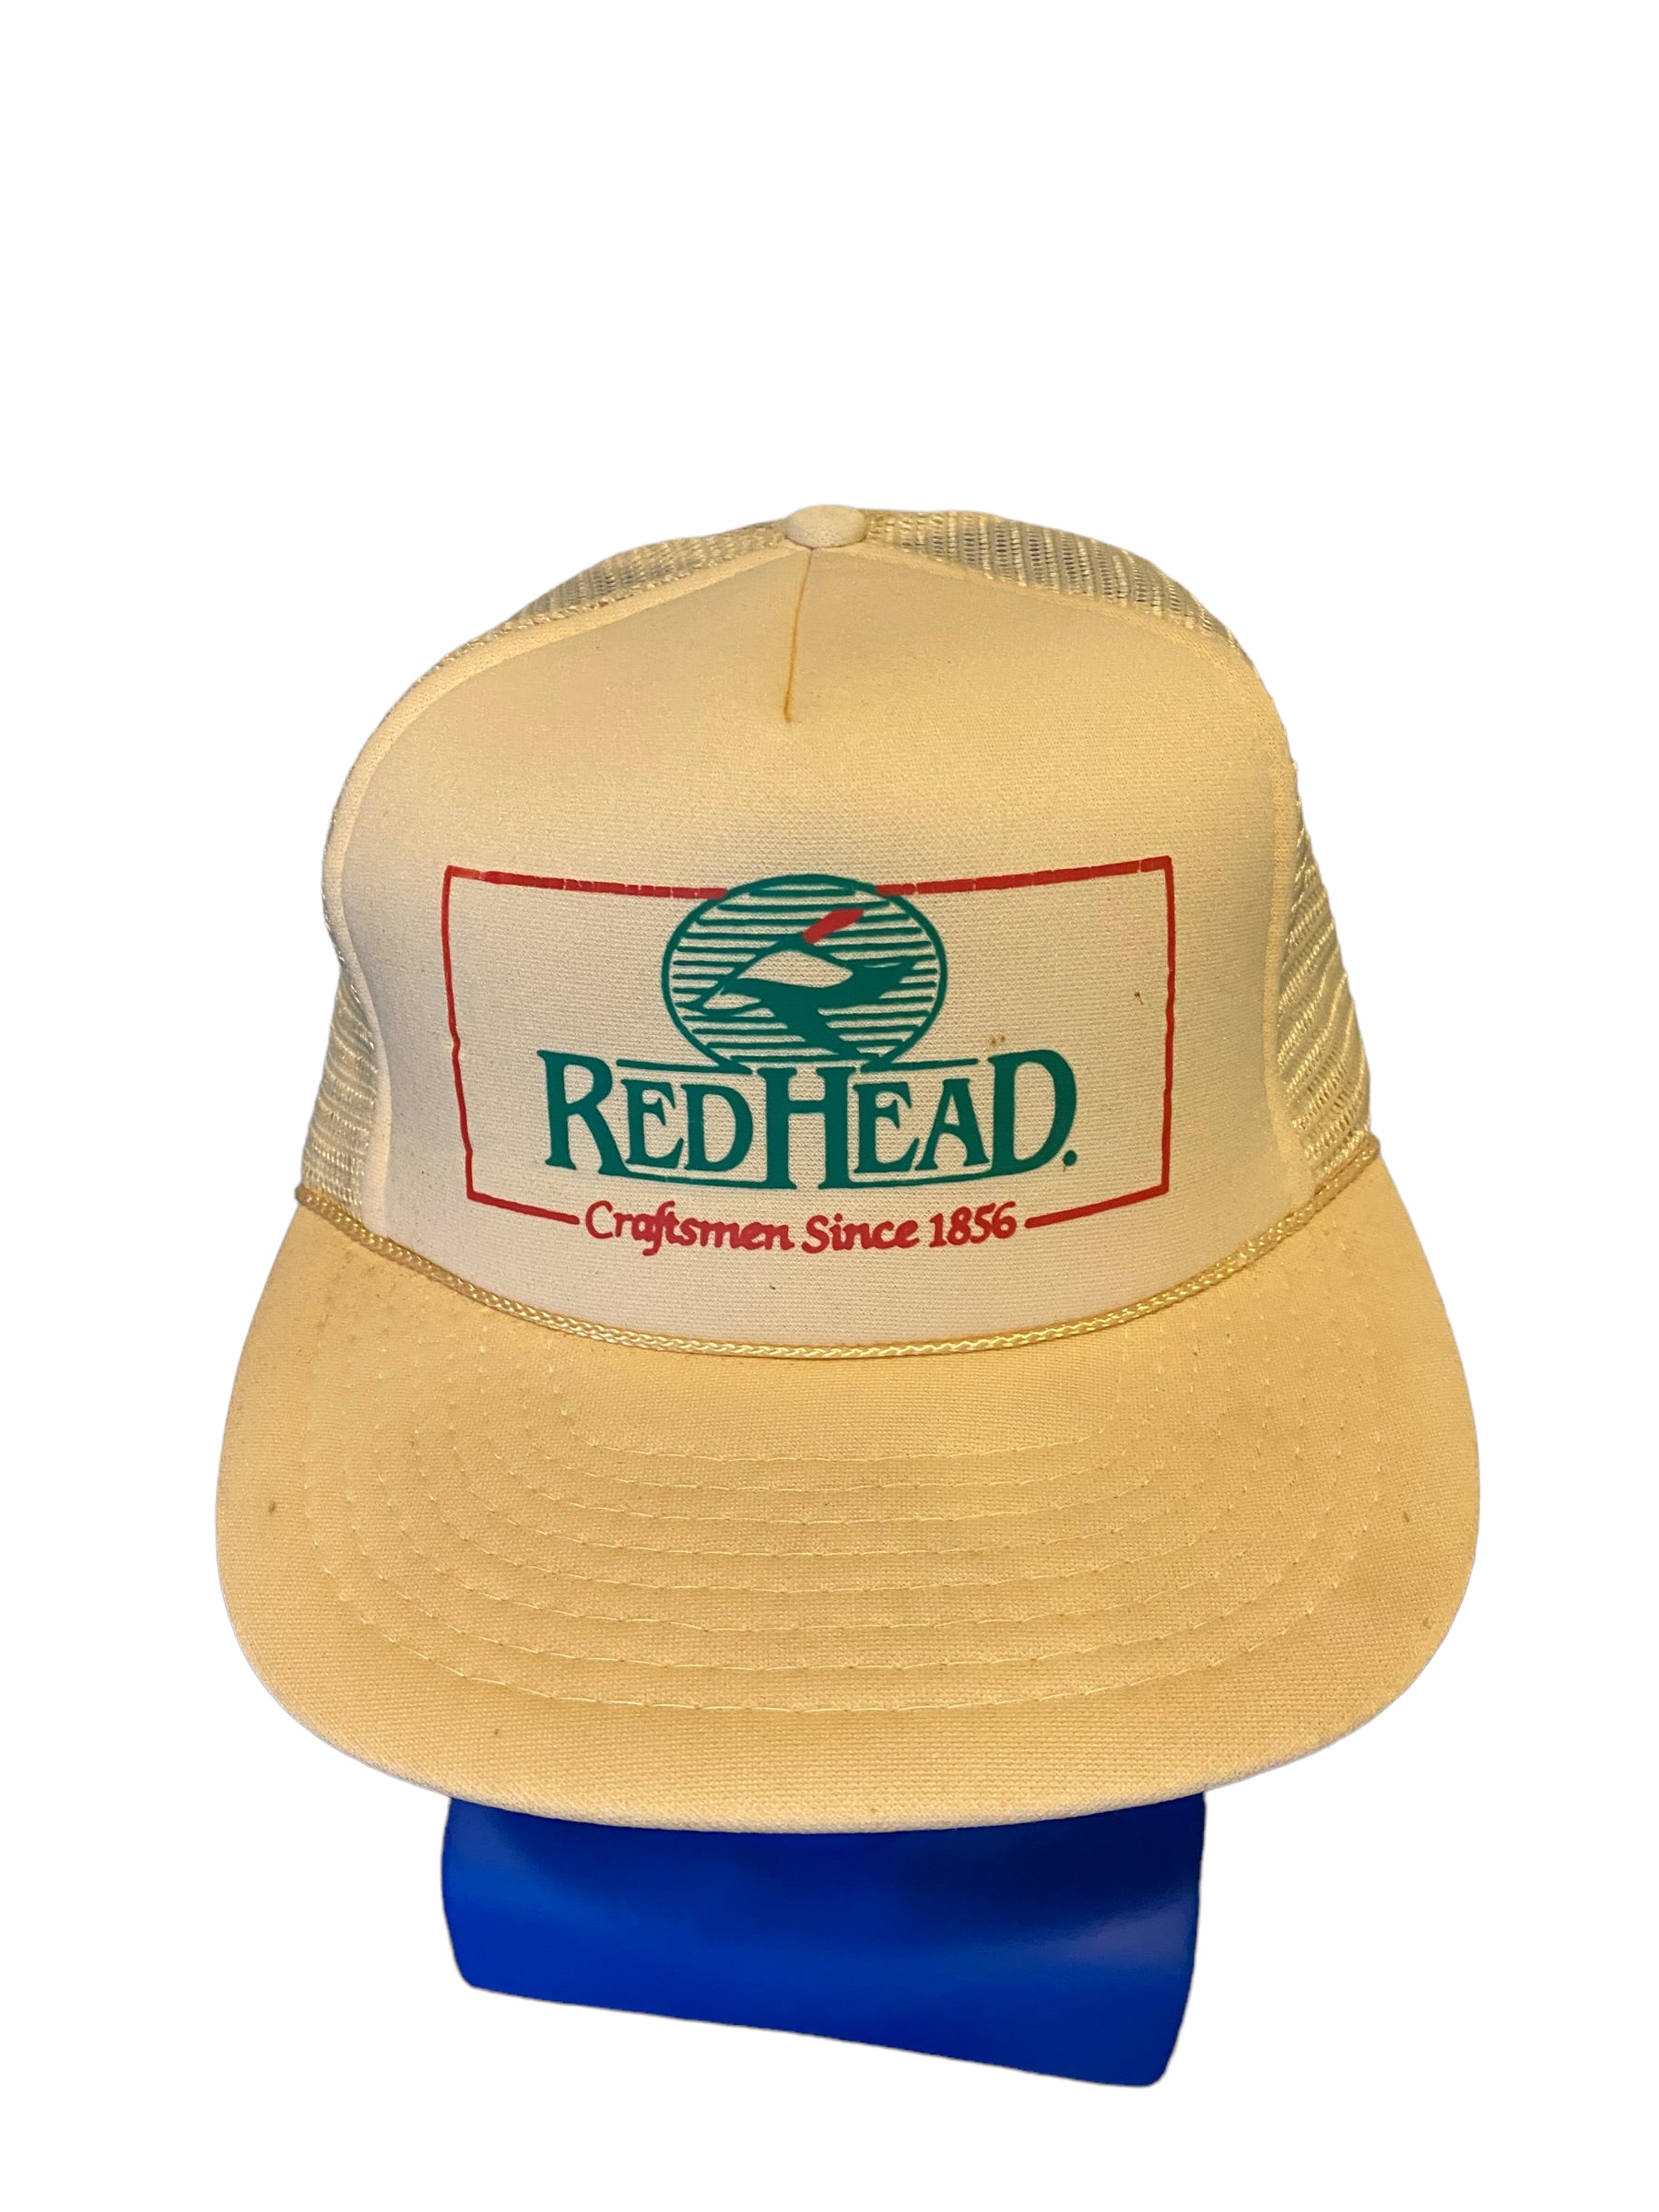 Redhead - Trucker Hat  Trucker hat, Trucker, Hats